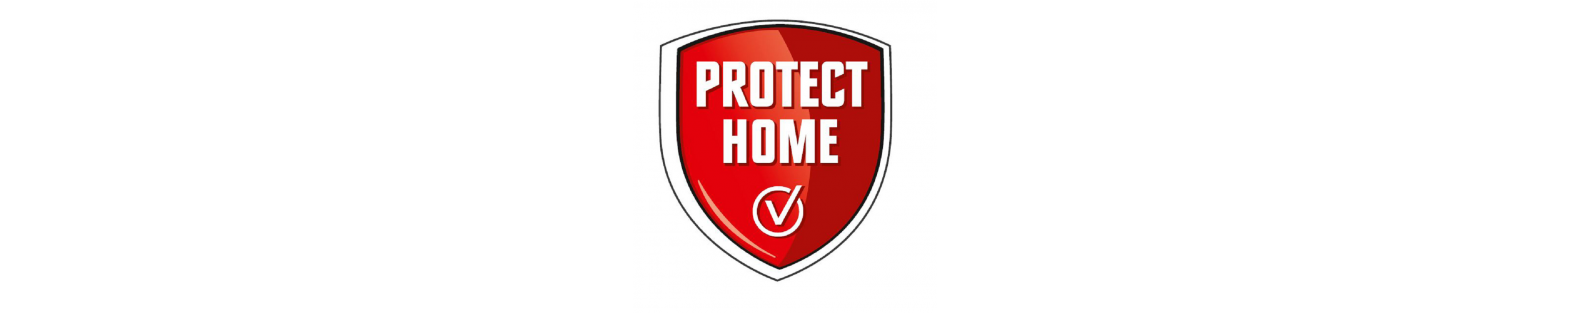 Protéger la maison